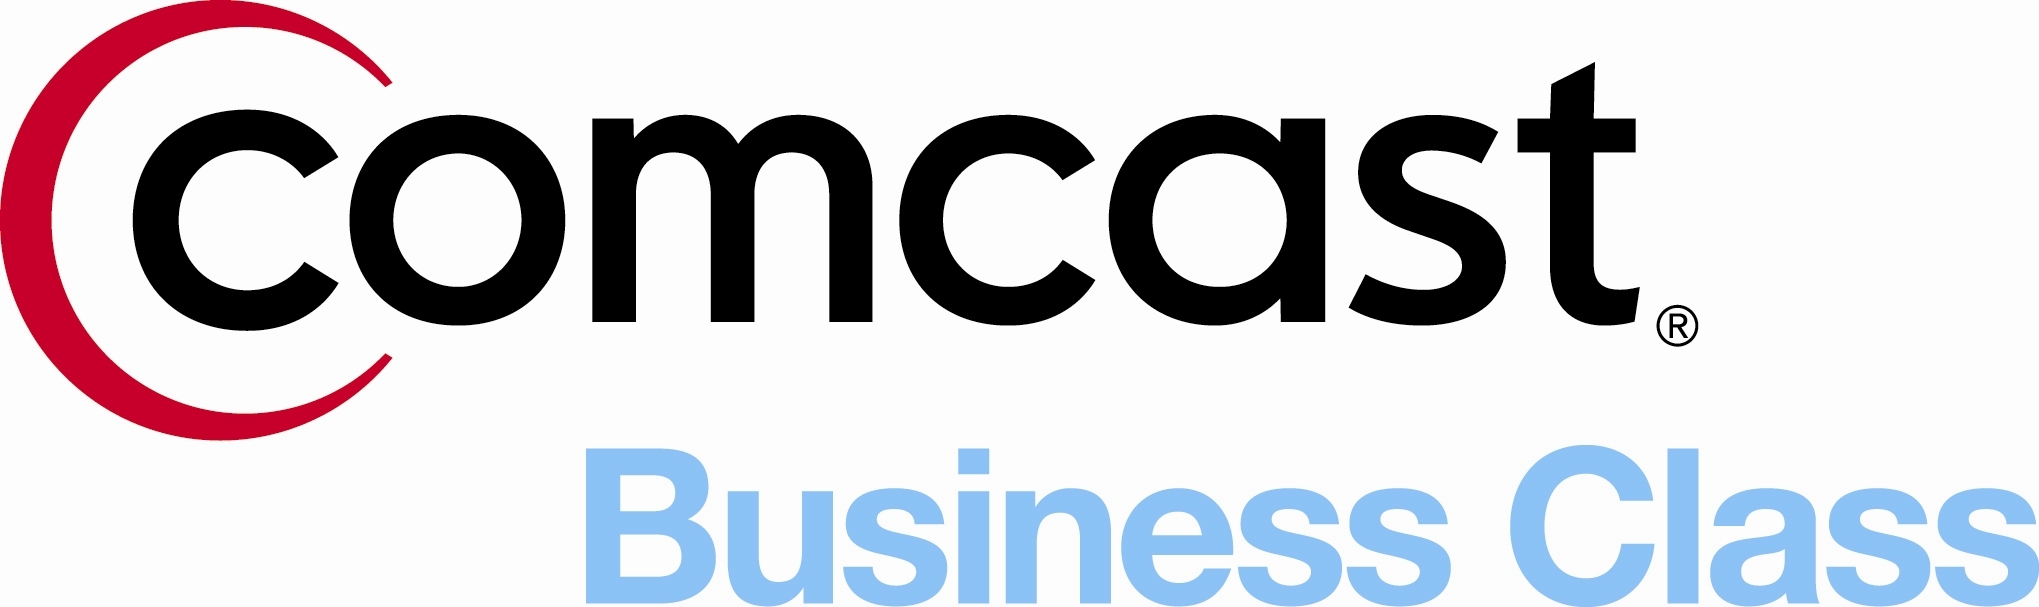 Comcast Business Class Logo photo - 1